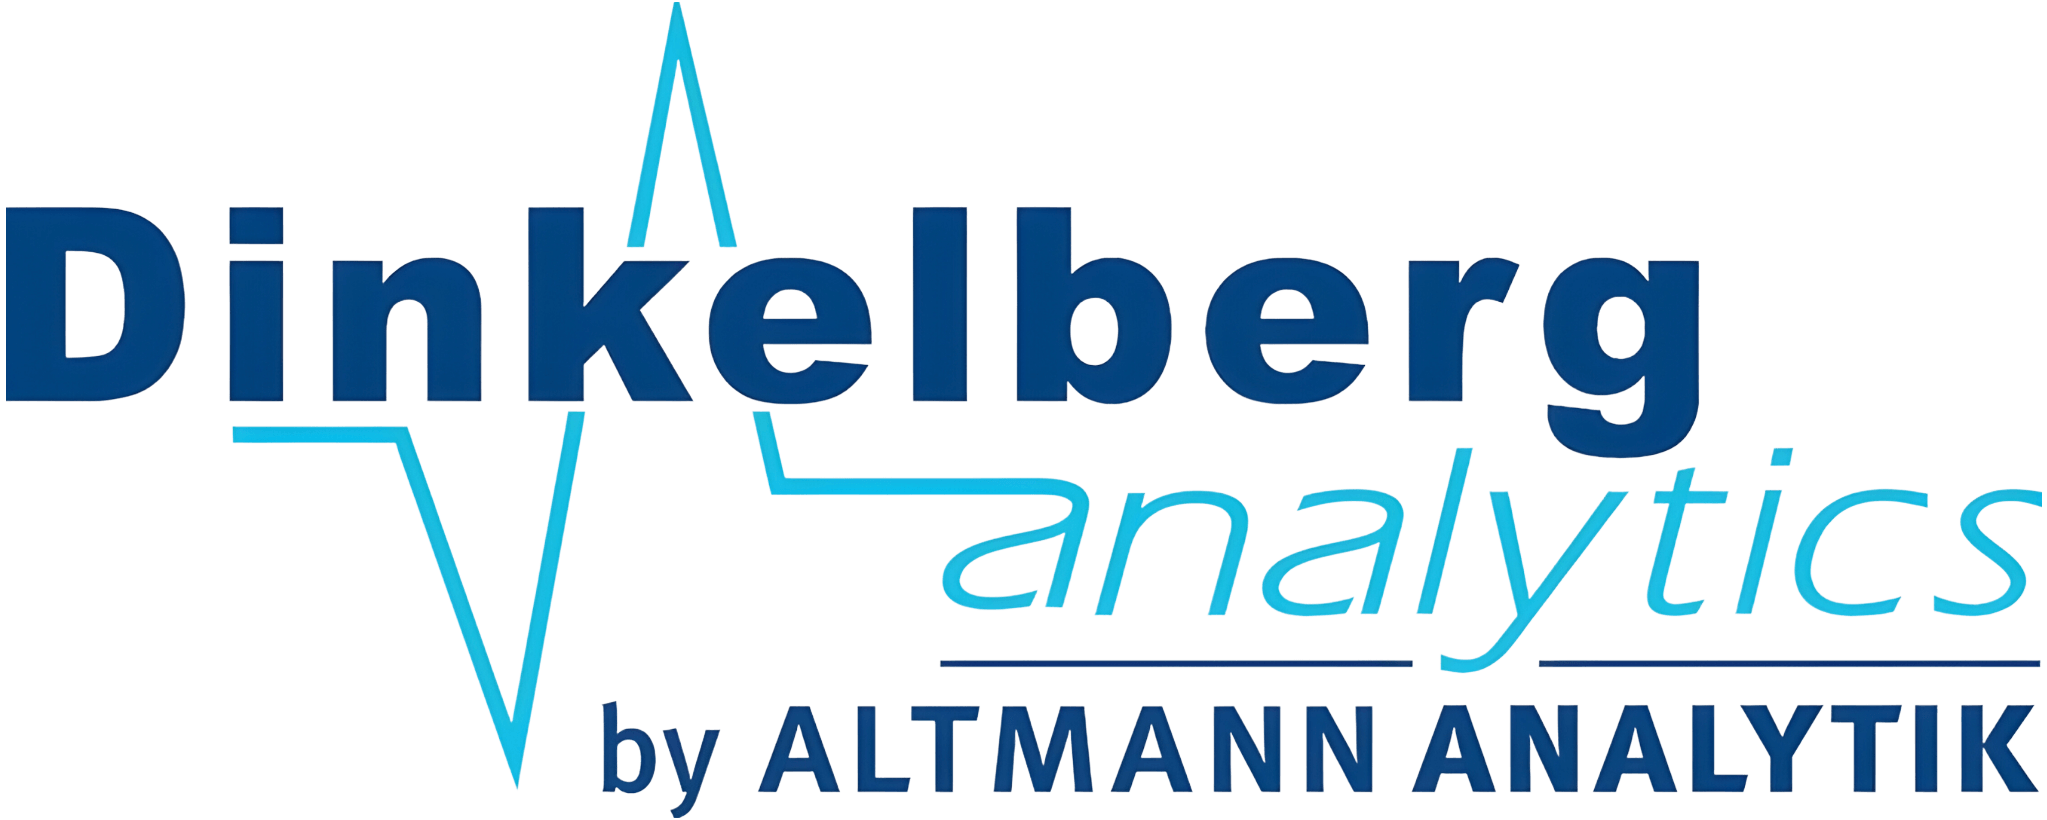 new-dinkelberg analytic